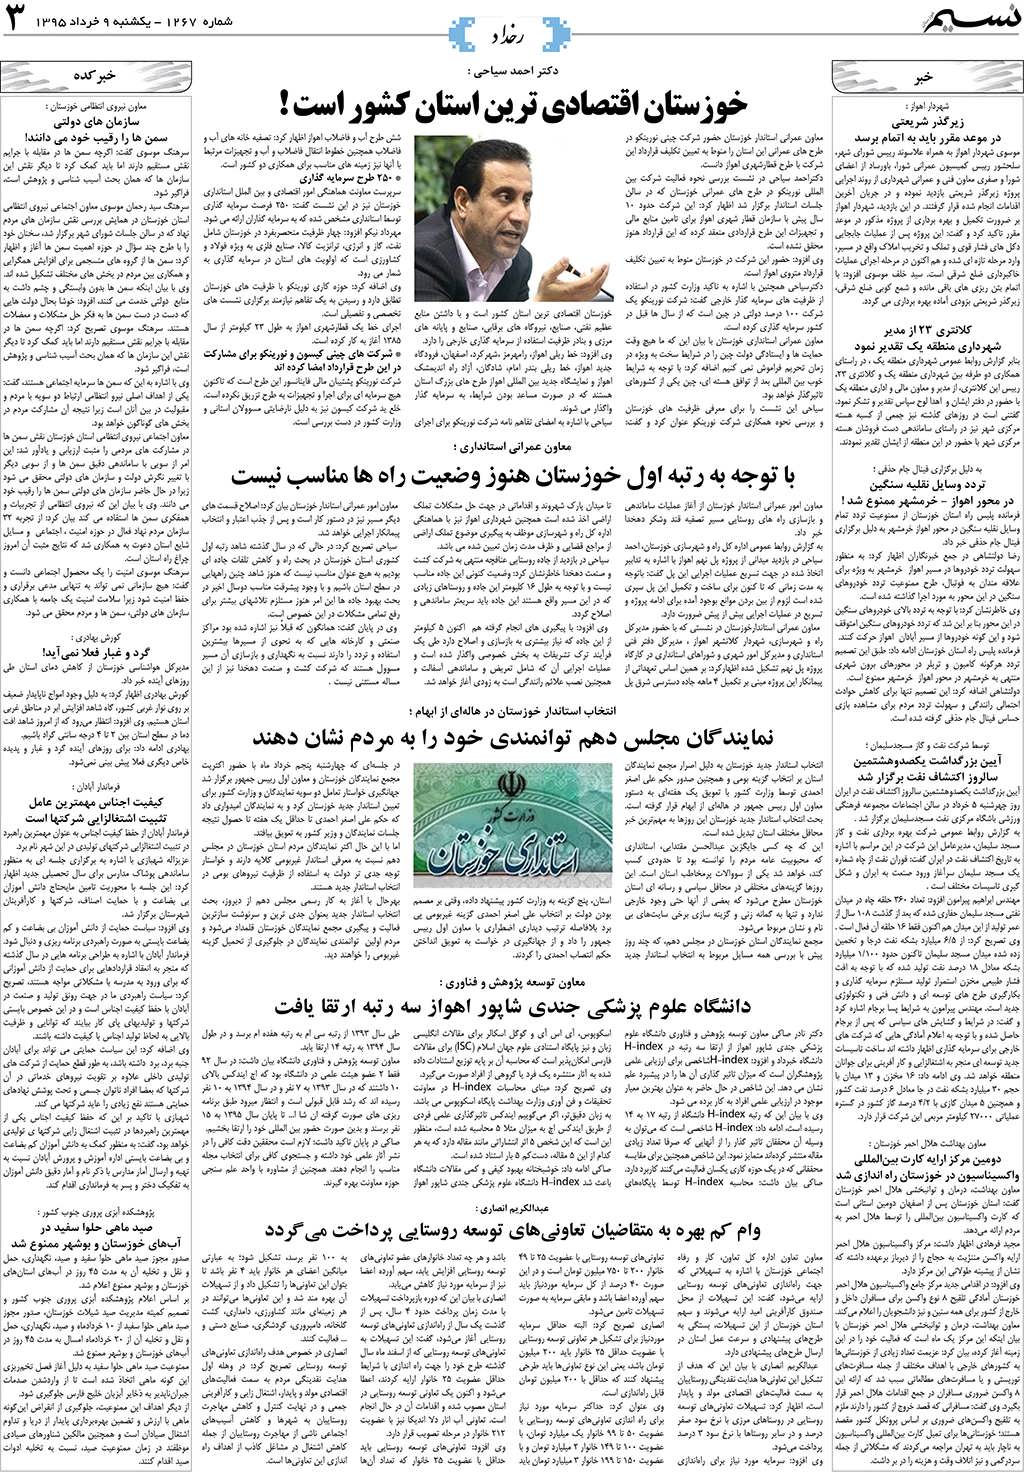 صفحه رخداد روزنامه نسیم شماره 1267